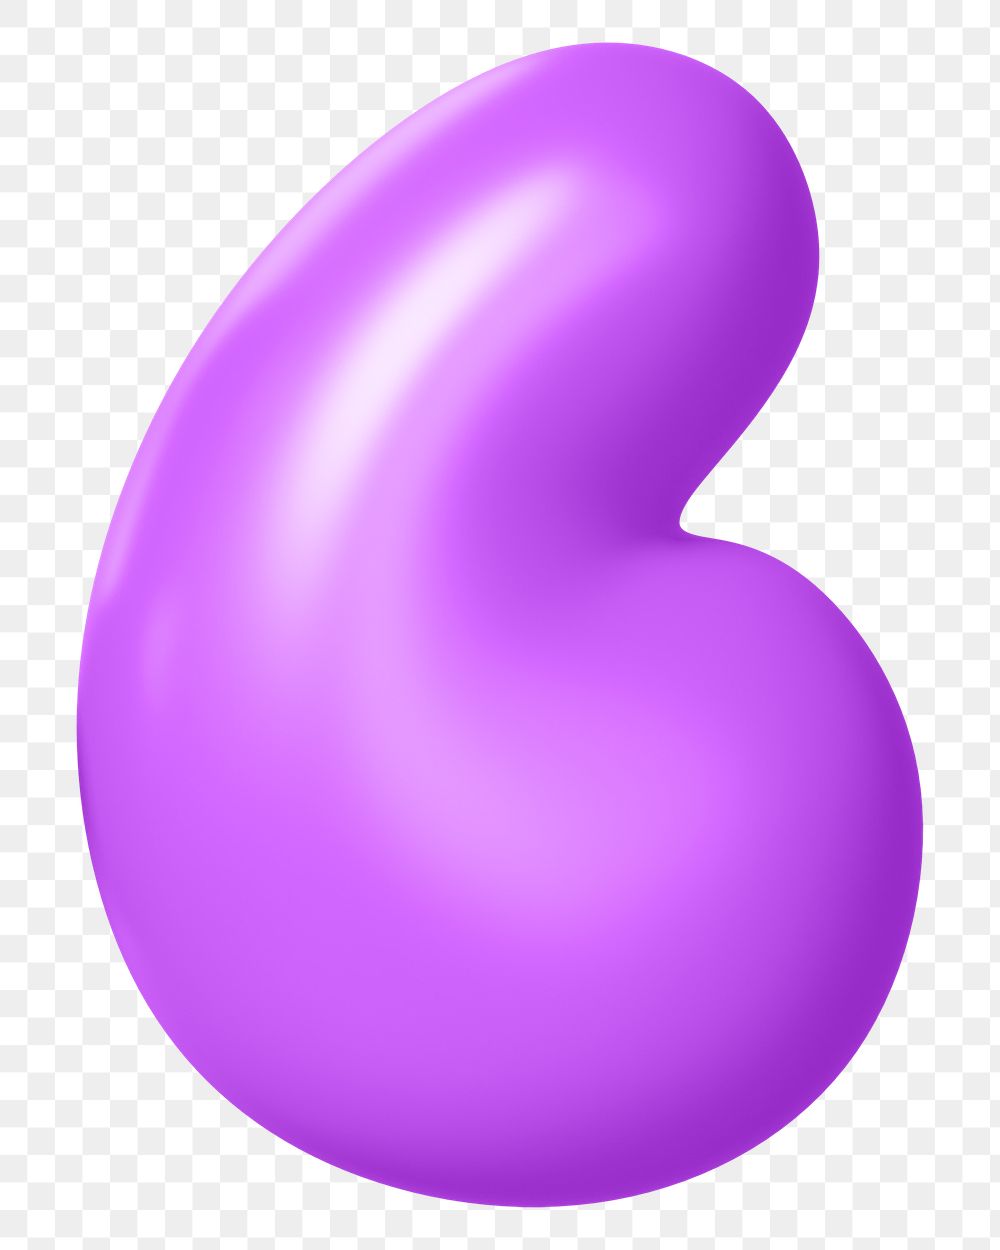 Quotation mark png 3D purple symbol, transparent background